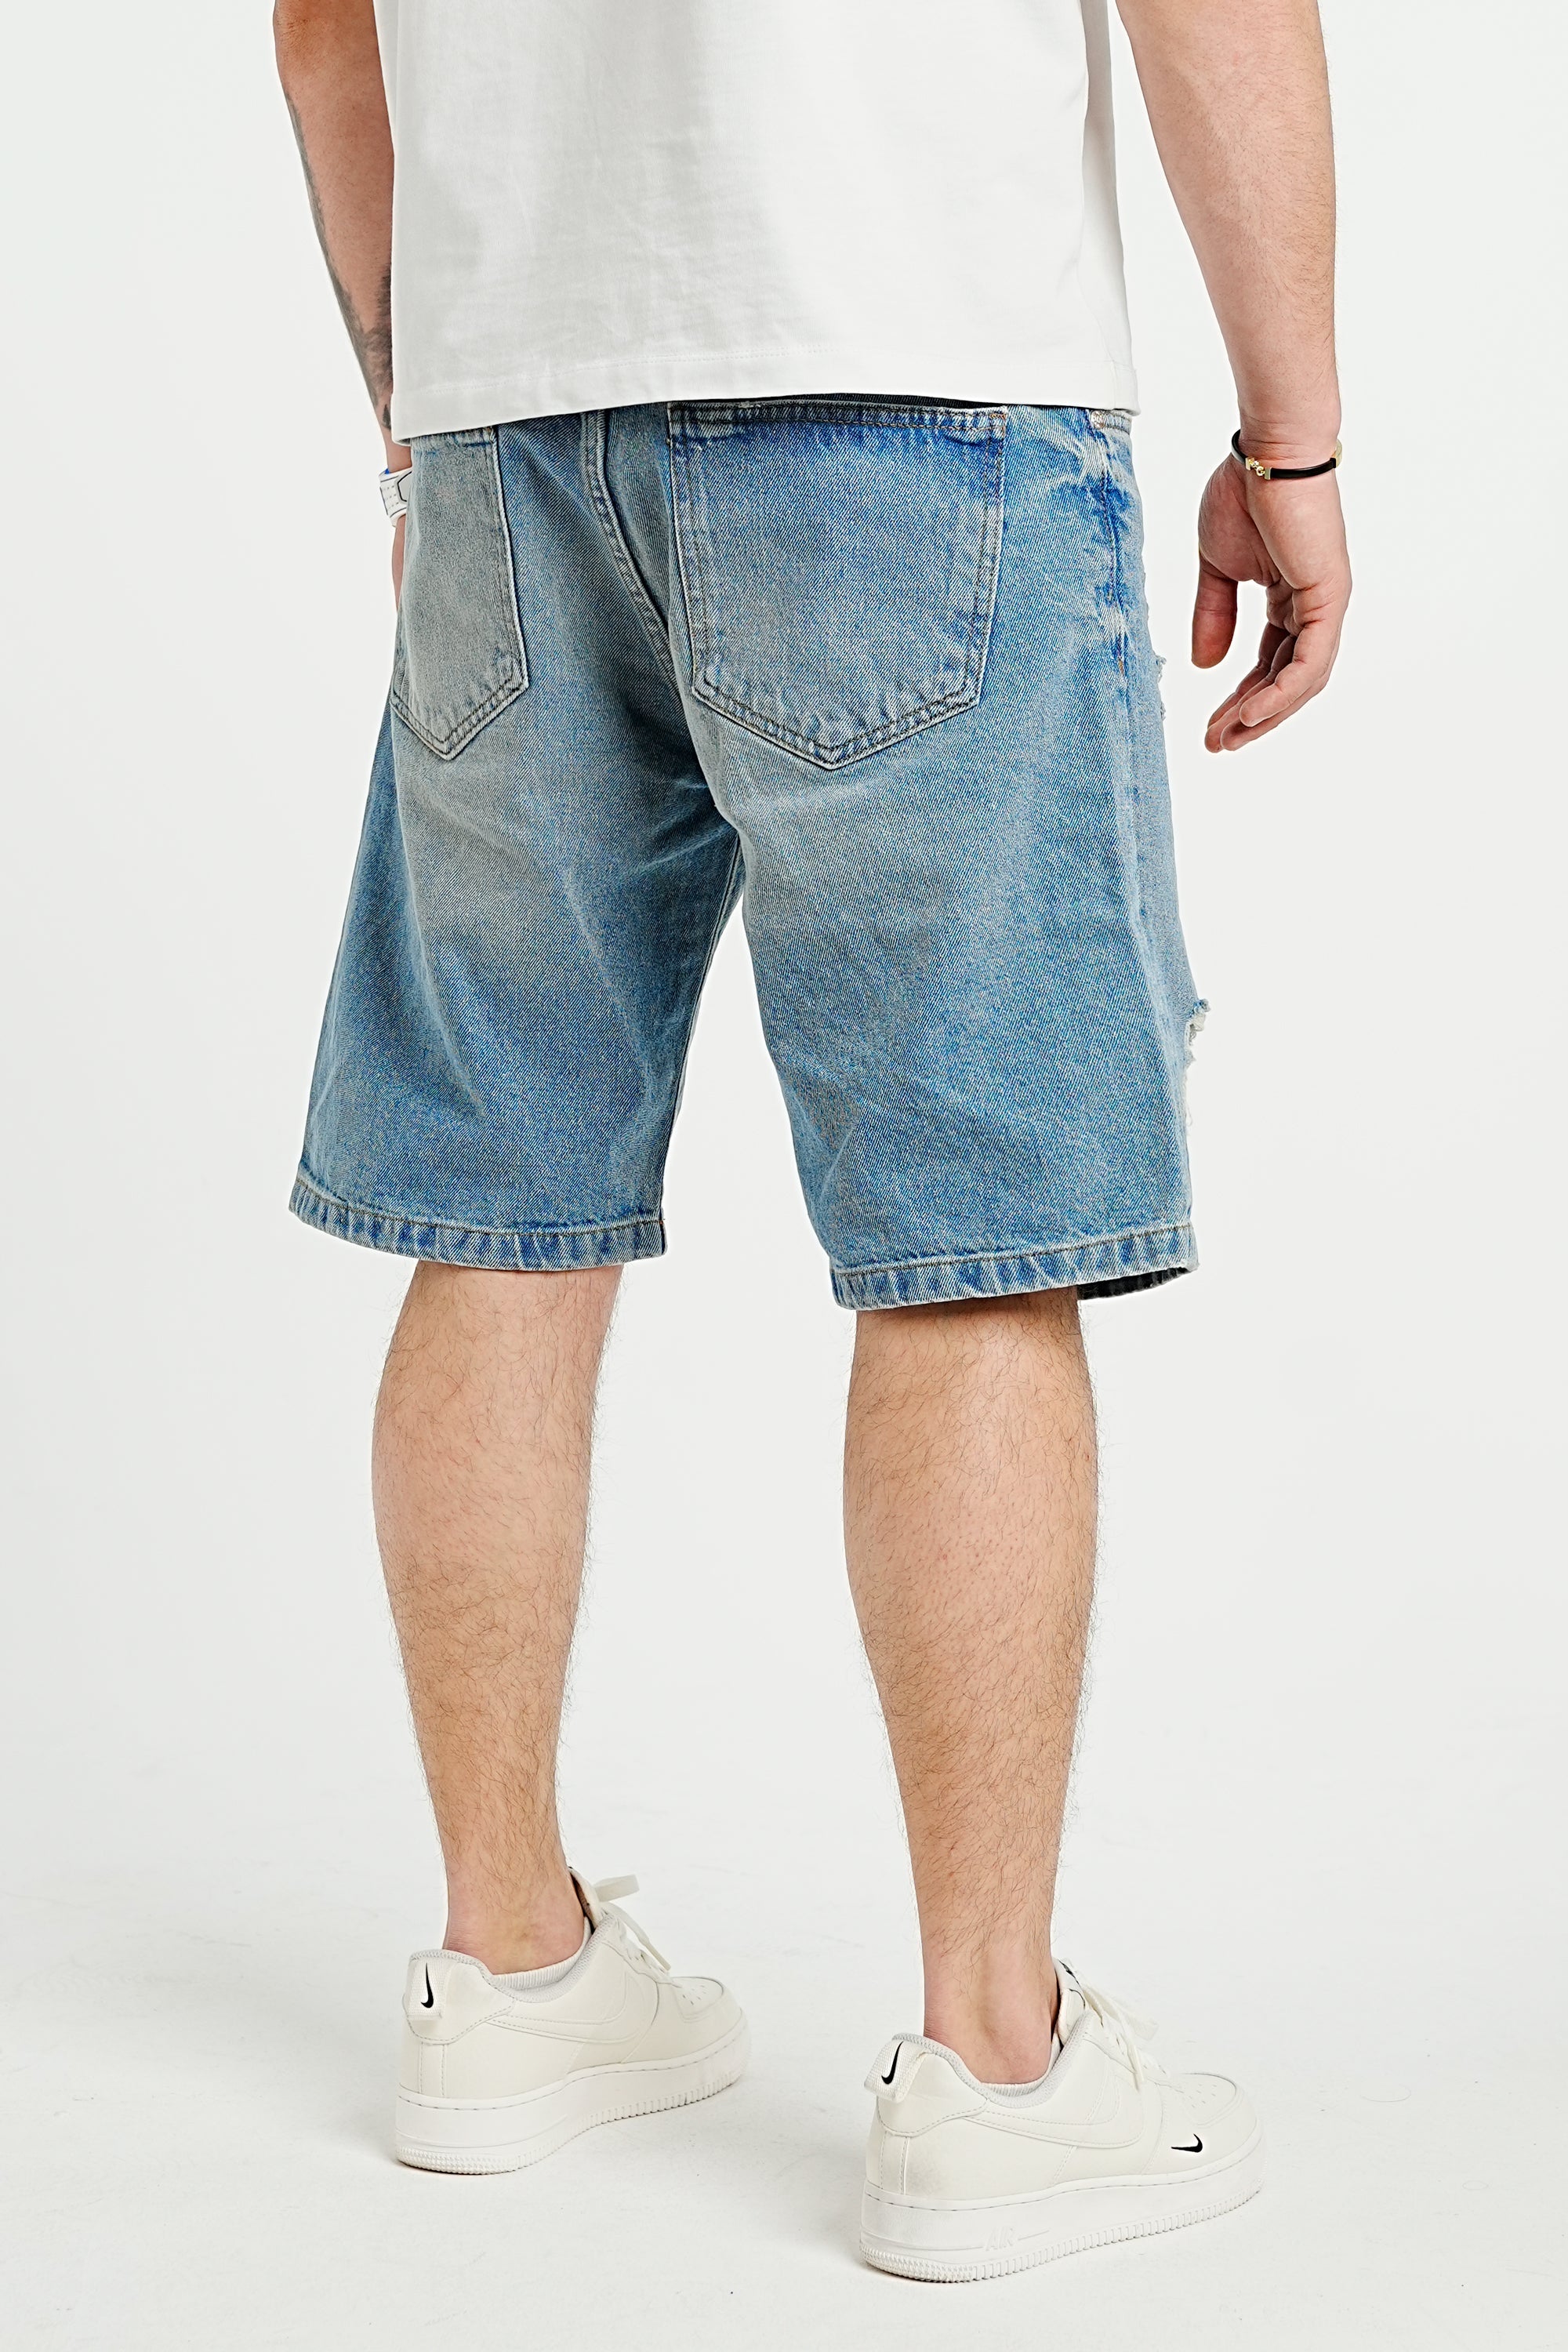 Premium Distressed Blue Denim Shorts - UNEFFECTED STUDIOS® - Shorts - 2Y PREMIUM